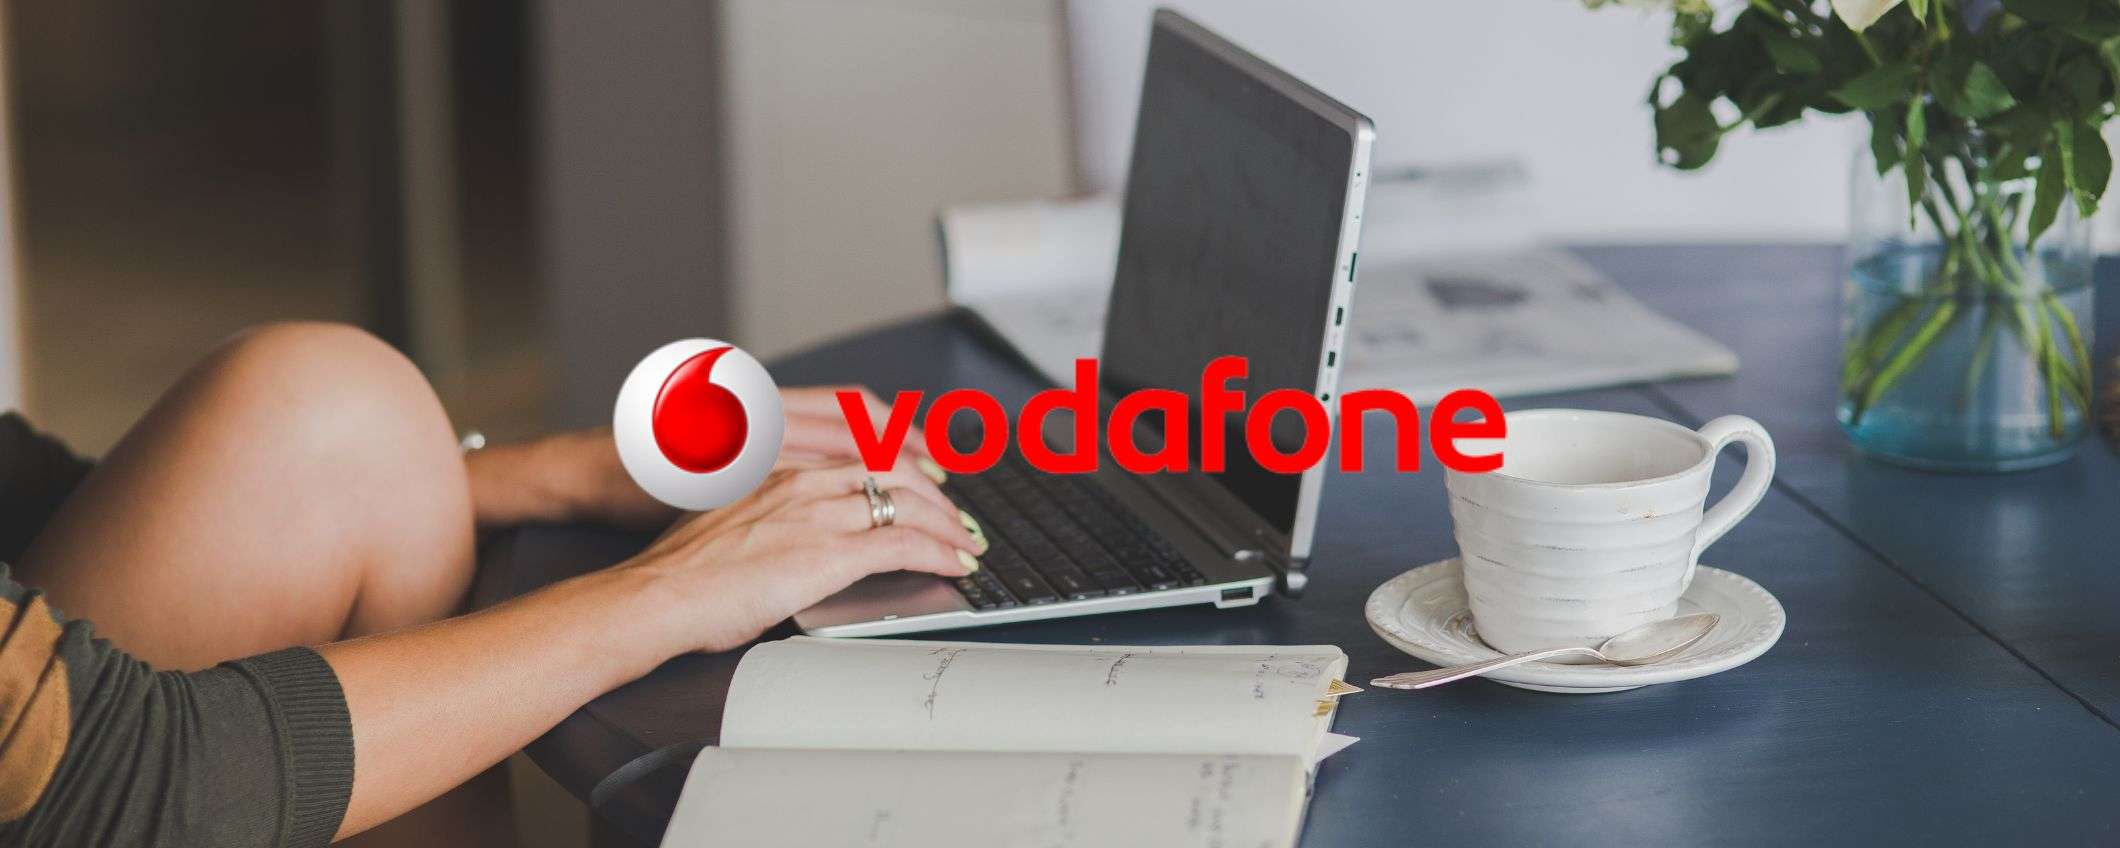 Vodafone, naviga senza limiti con Internet Unlimited a 24,90€/mese